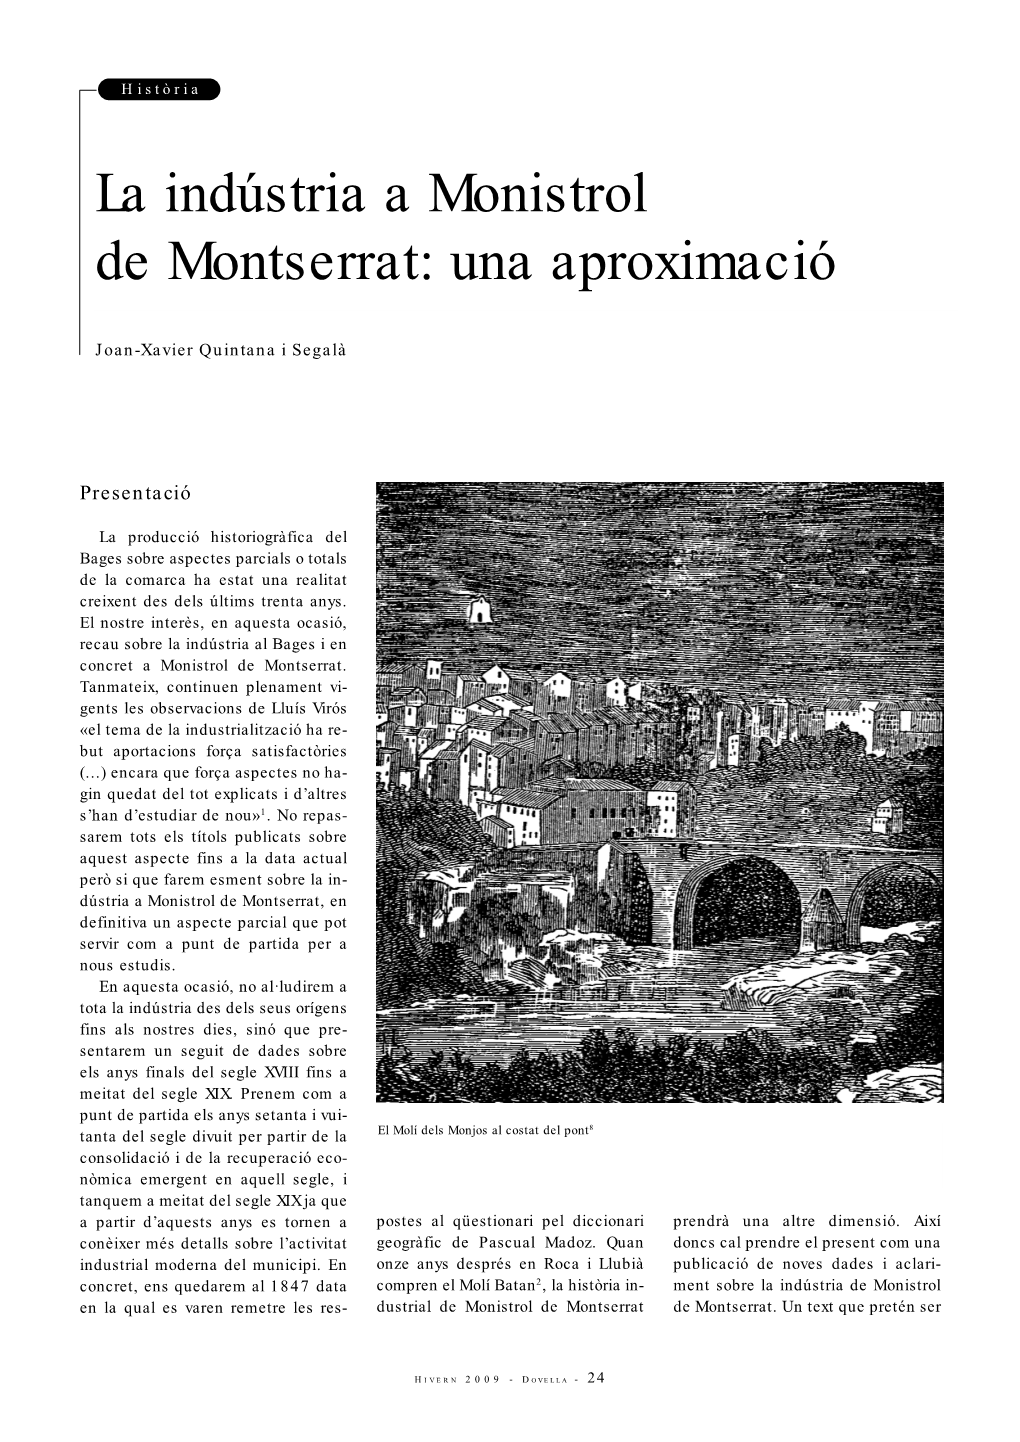 La Indústria a Monistrol De Montserrat: Una Aproximació